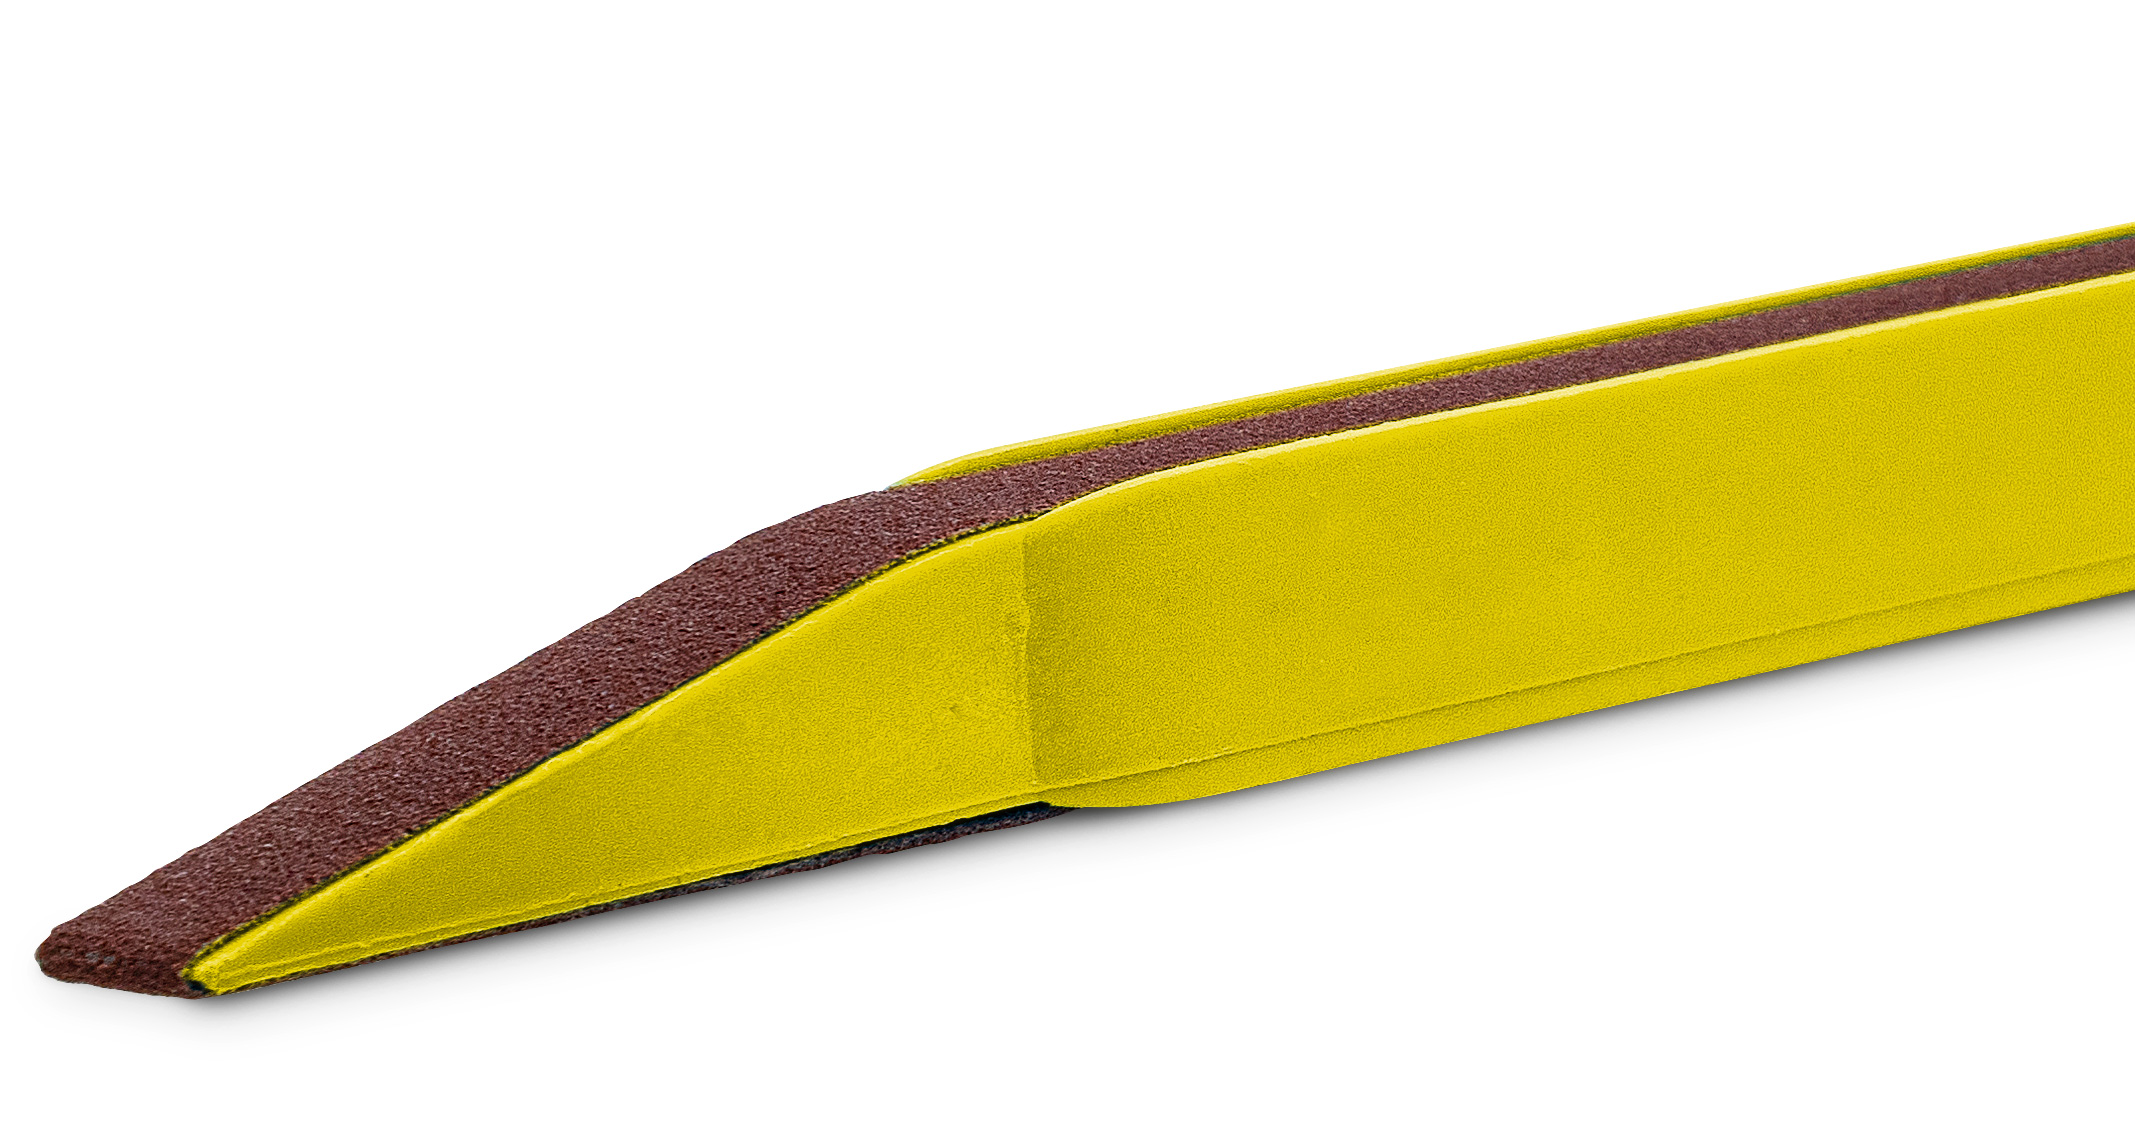 Schuurstaafje, korrel 400, geel, voor schuurbanden met 7 mm breedte